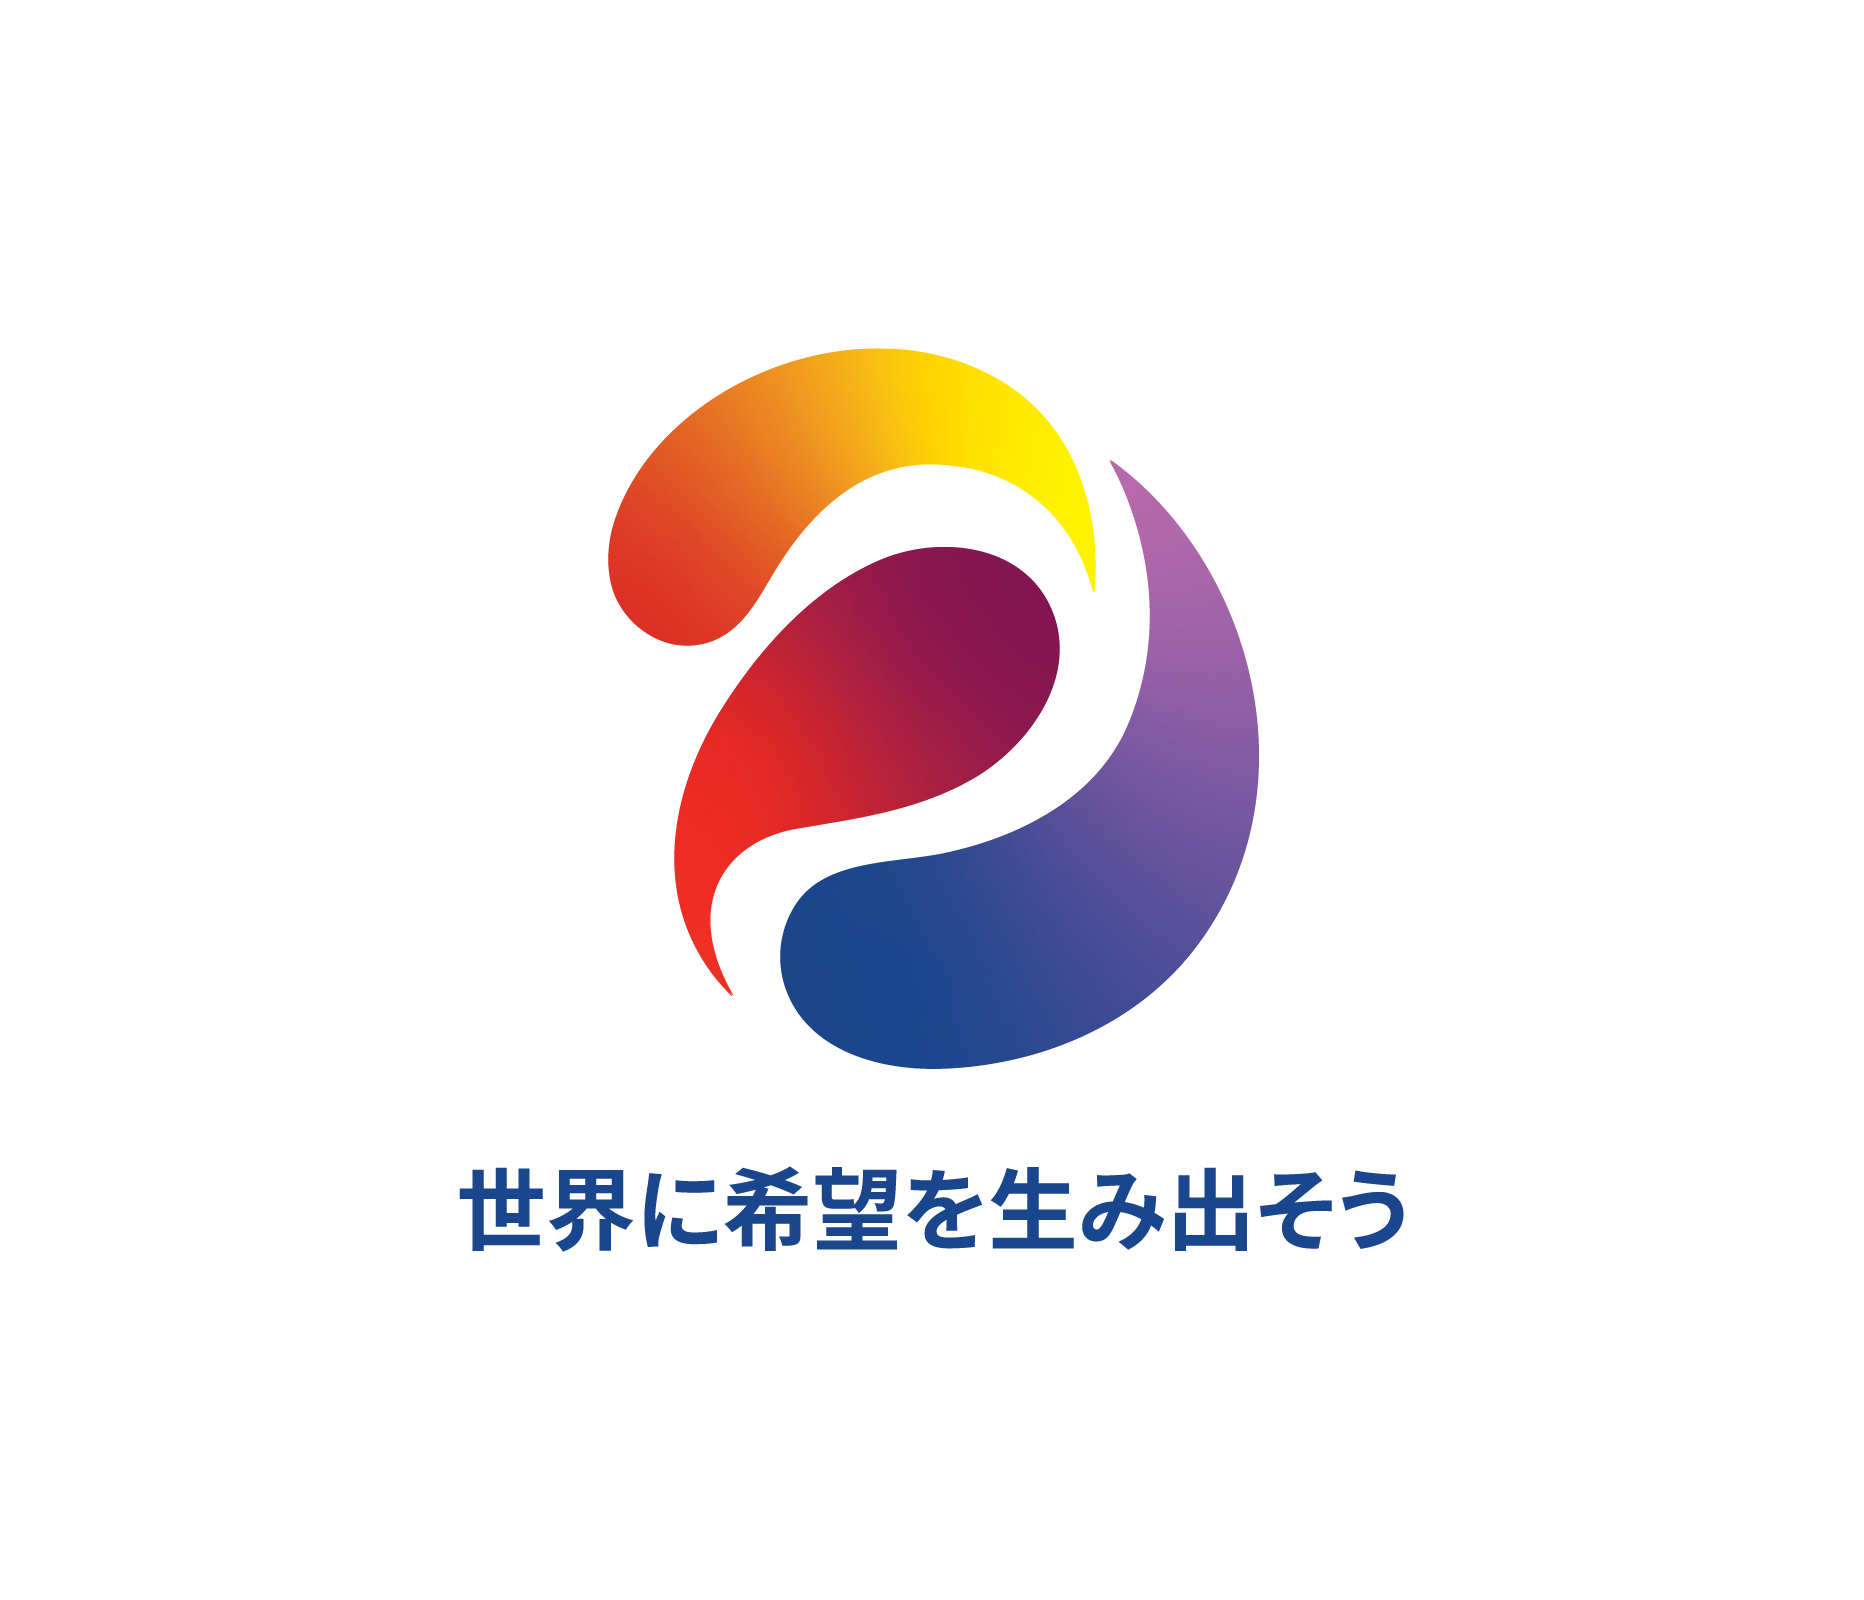 RI 2022-2023 国際ロータリーロゴ